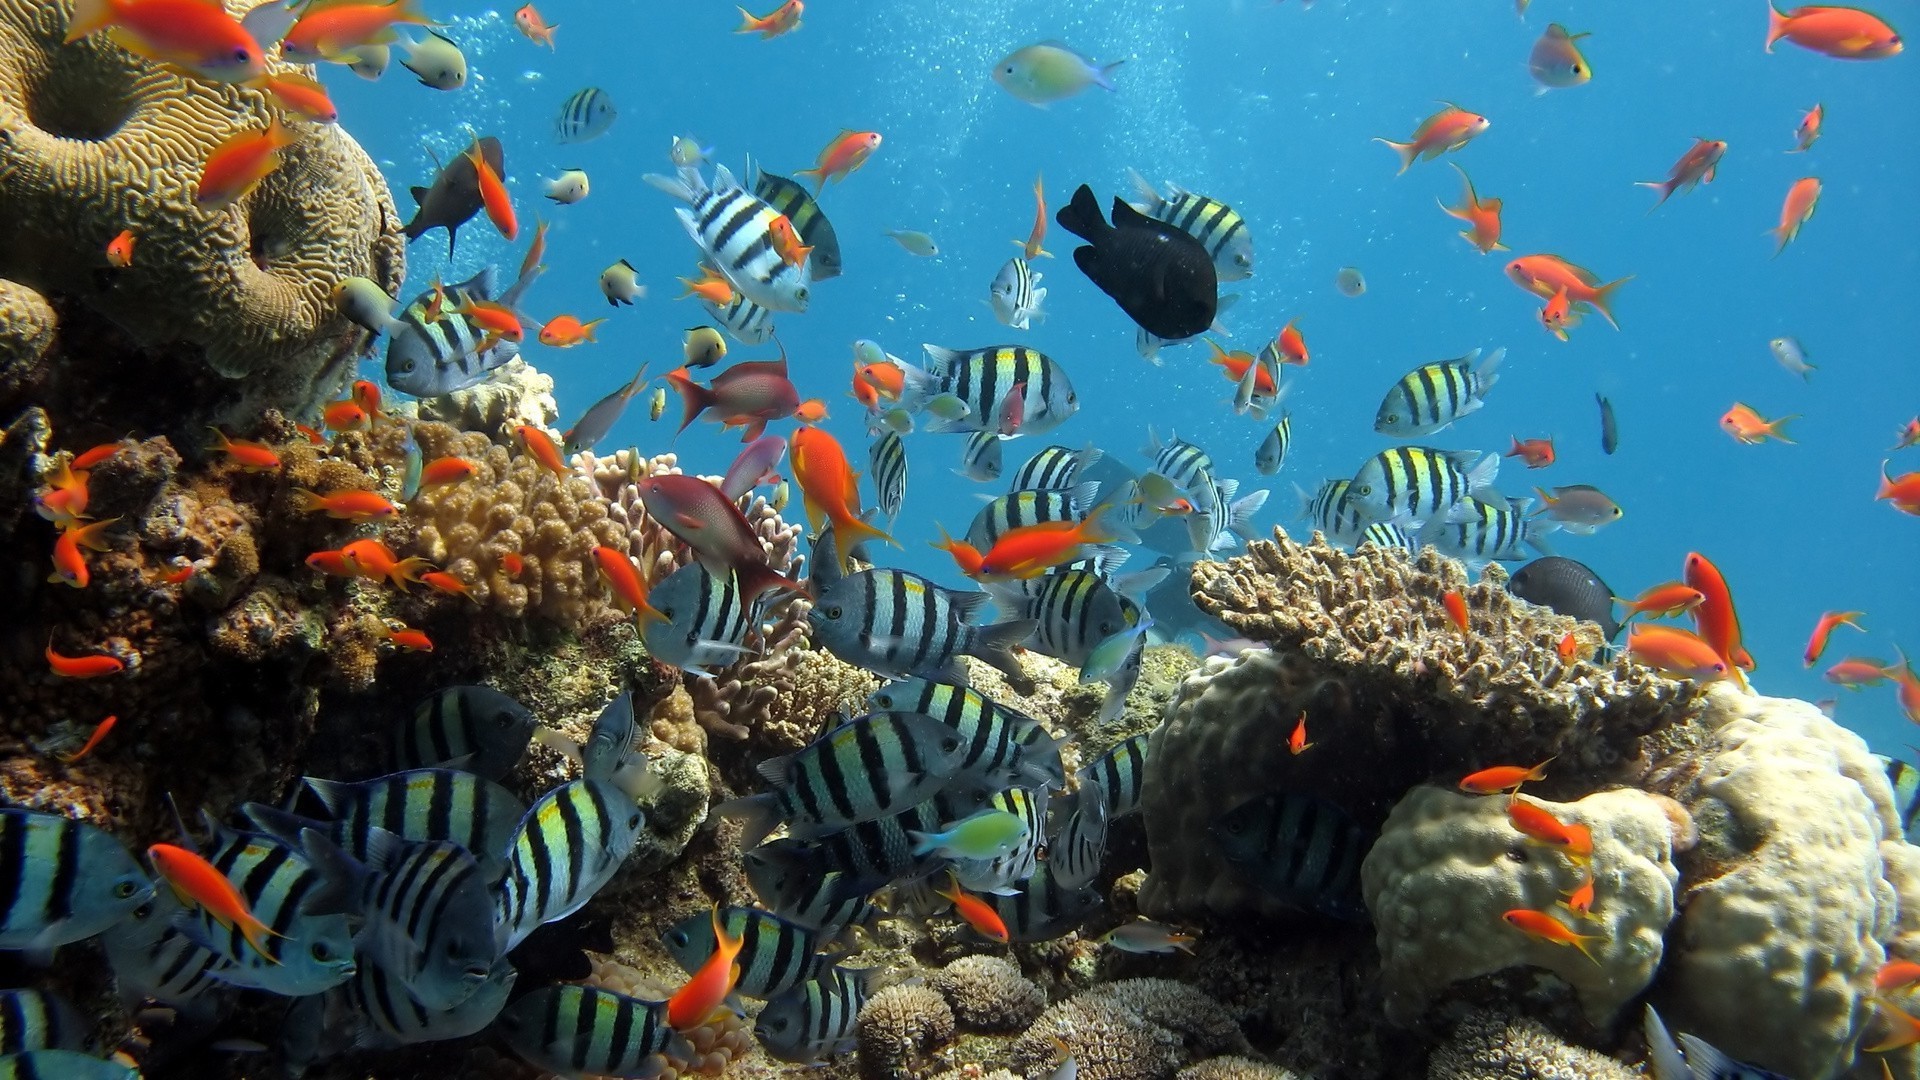 море и океан подводный рыбы коралловый аквариум риф океан тропический морской море плавание дайвинг водный золотая рыбка воды скуба природа экзотические экосистемы дикой природы глубокий